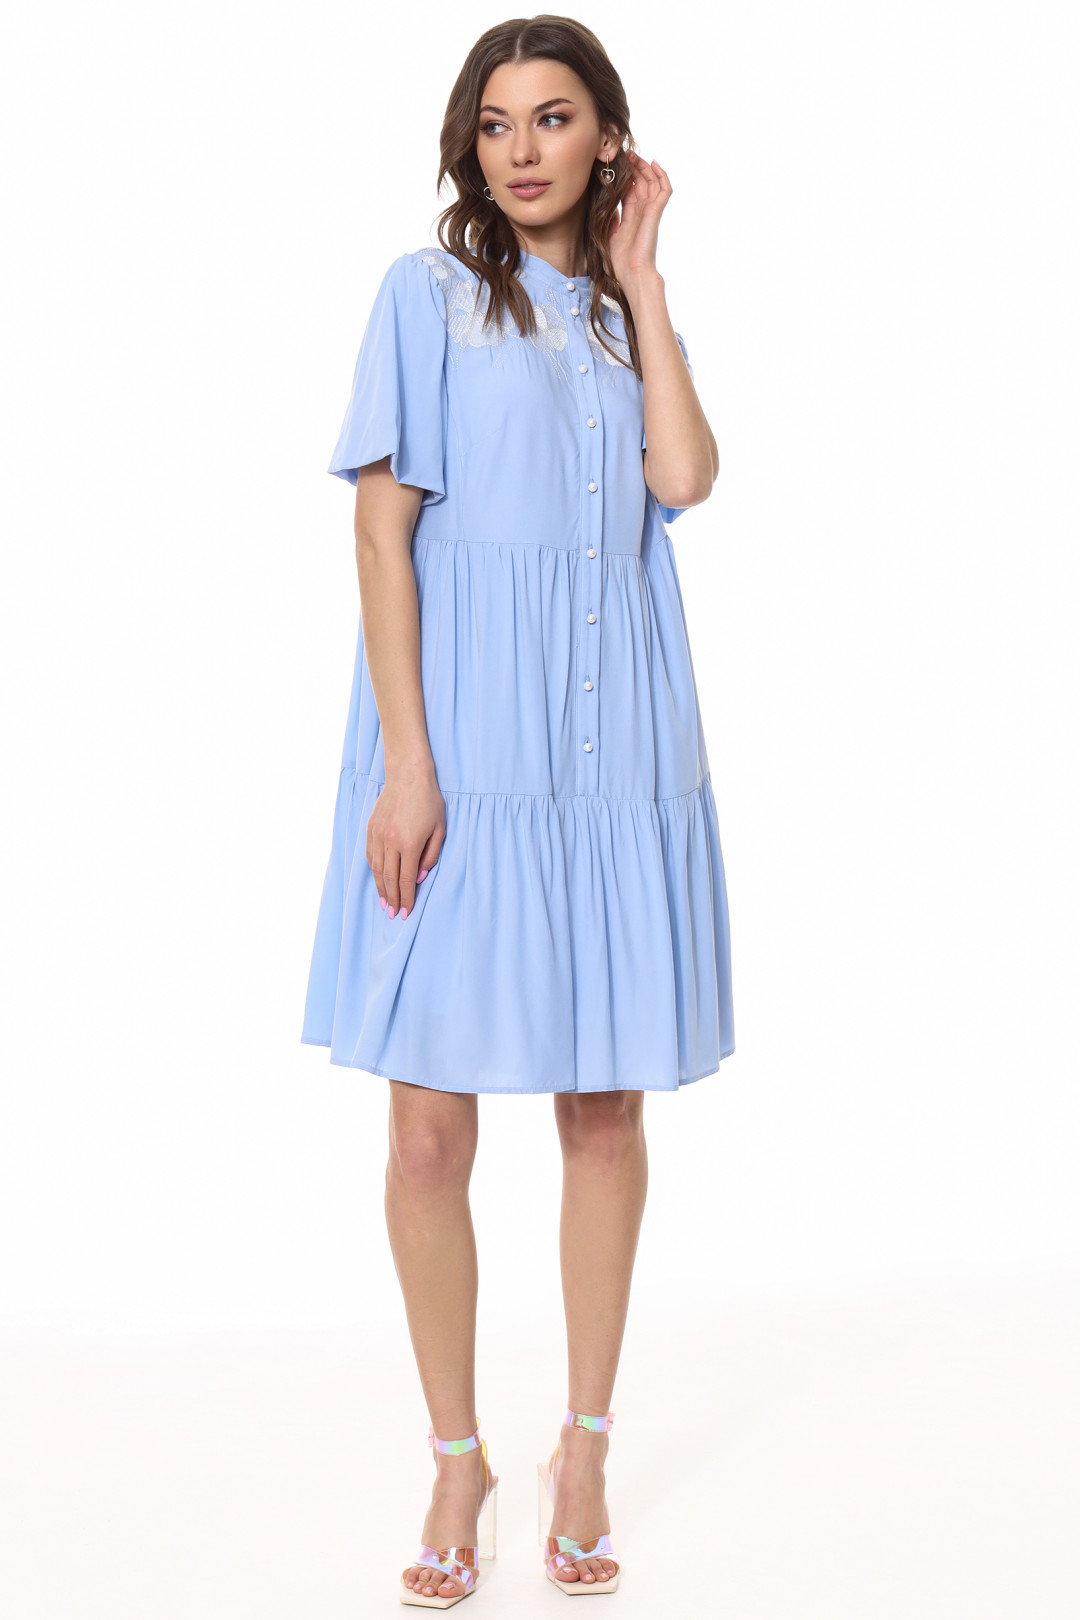 Платье Kaloris 2014-1 голубой